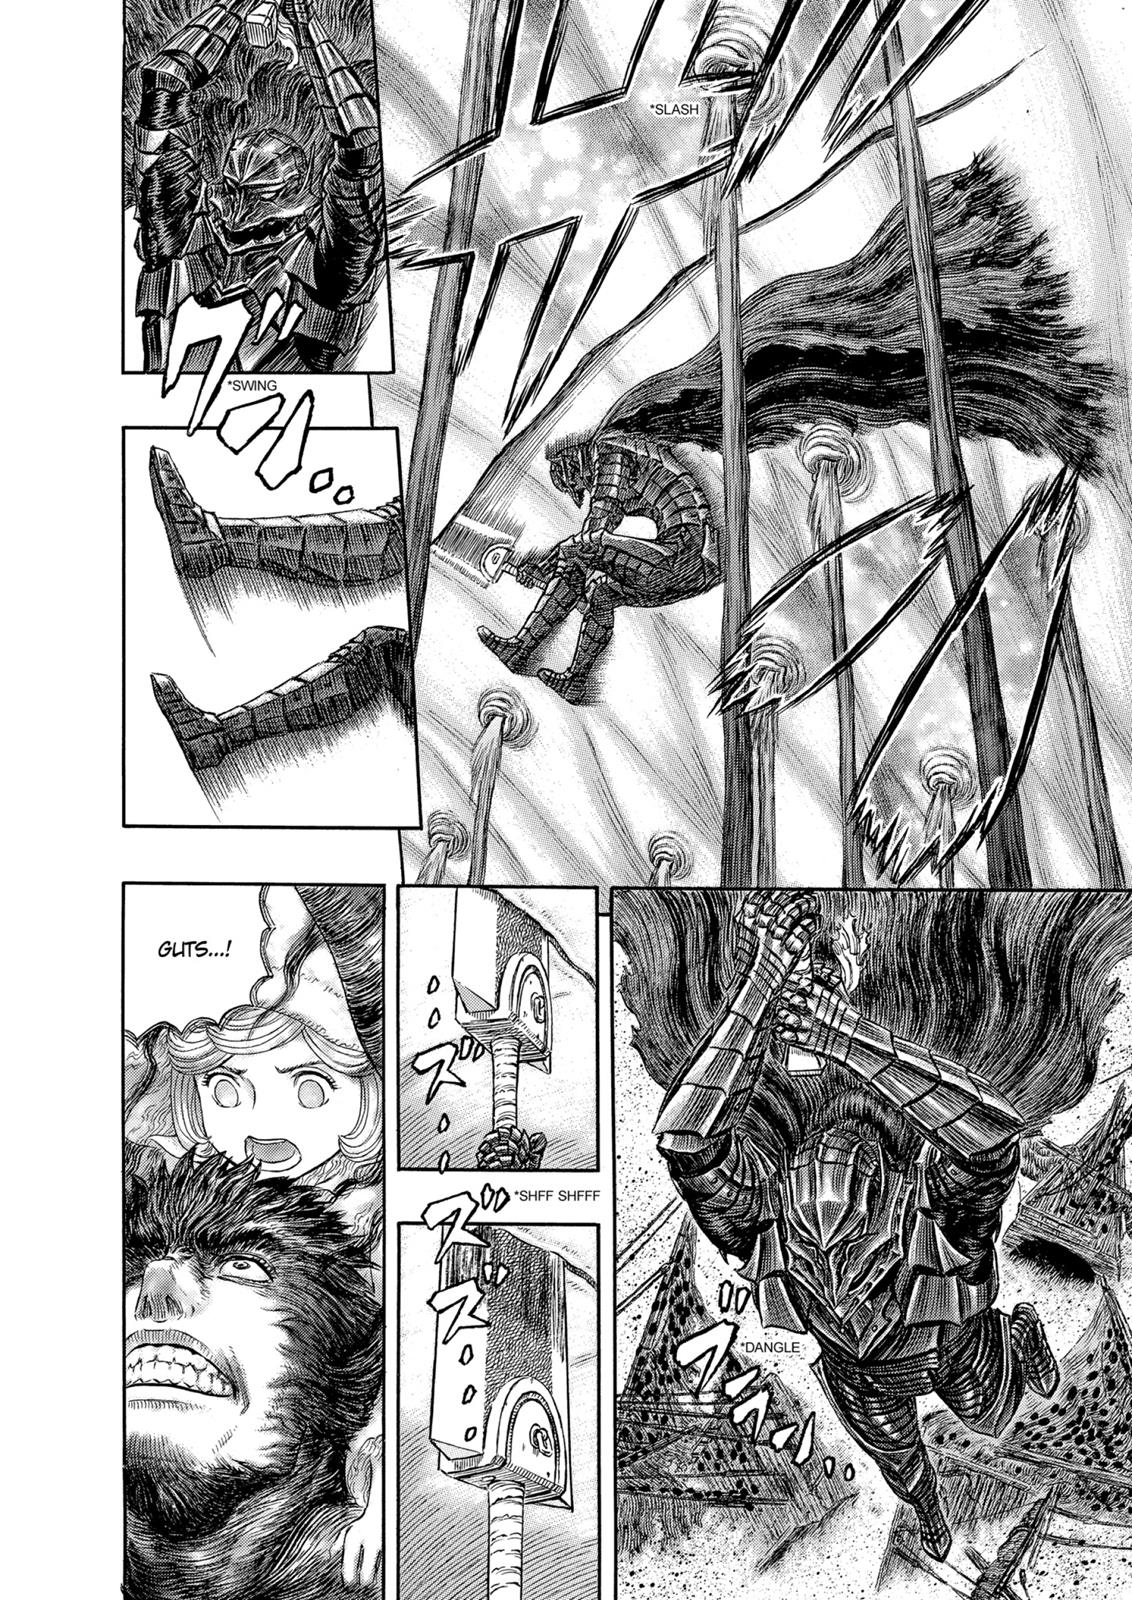 Berserk Manga Chapter 321 image 14